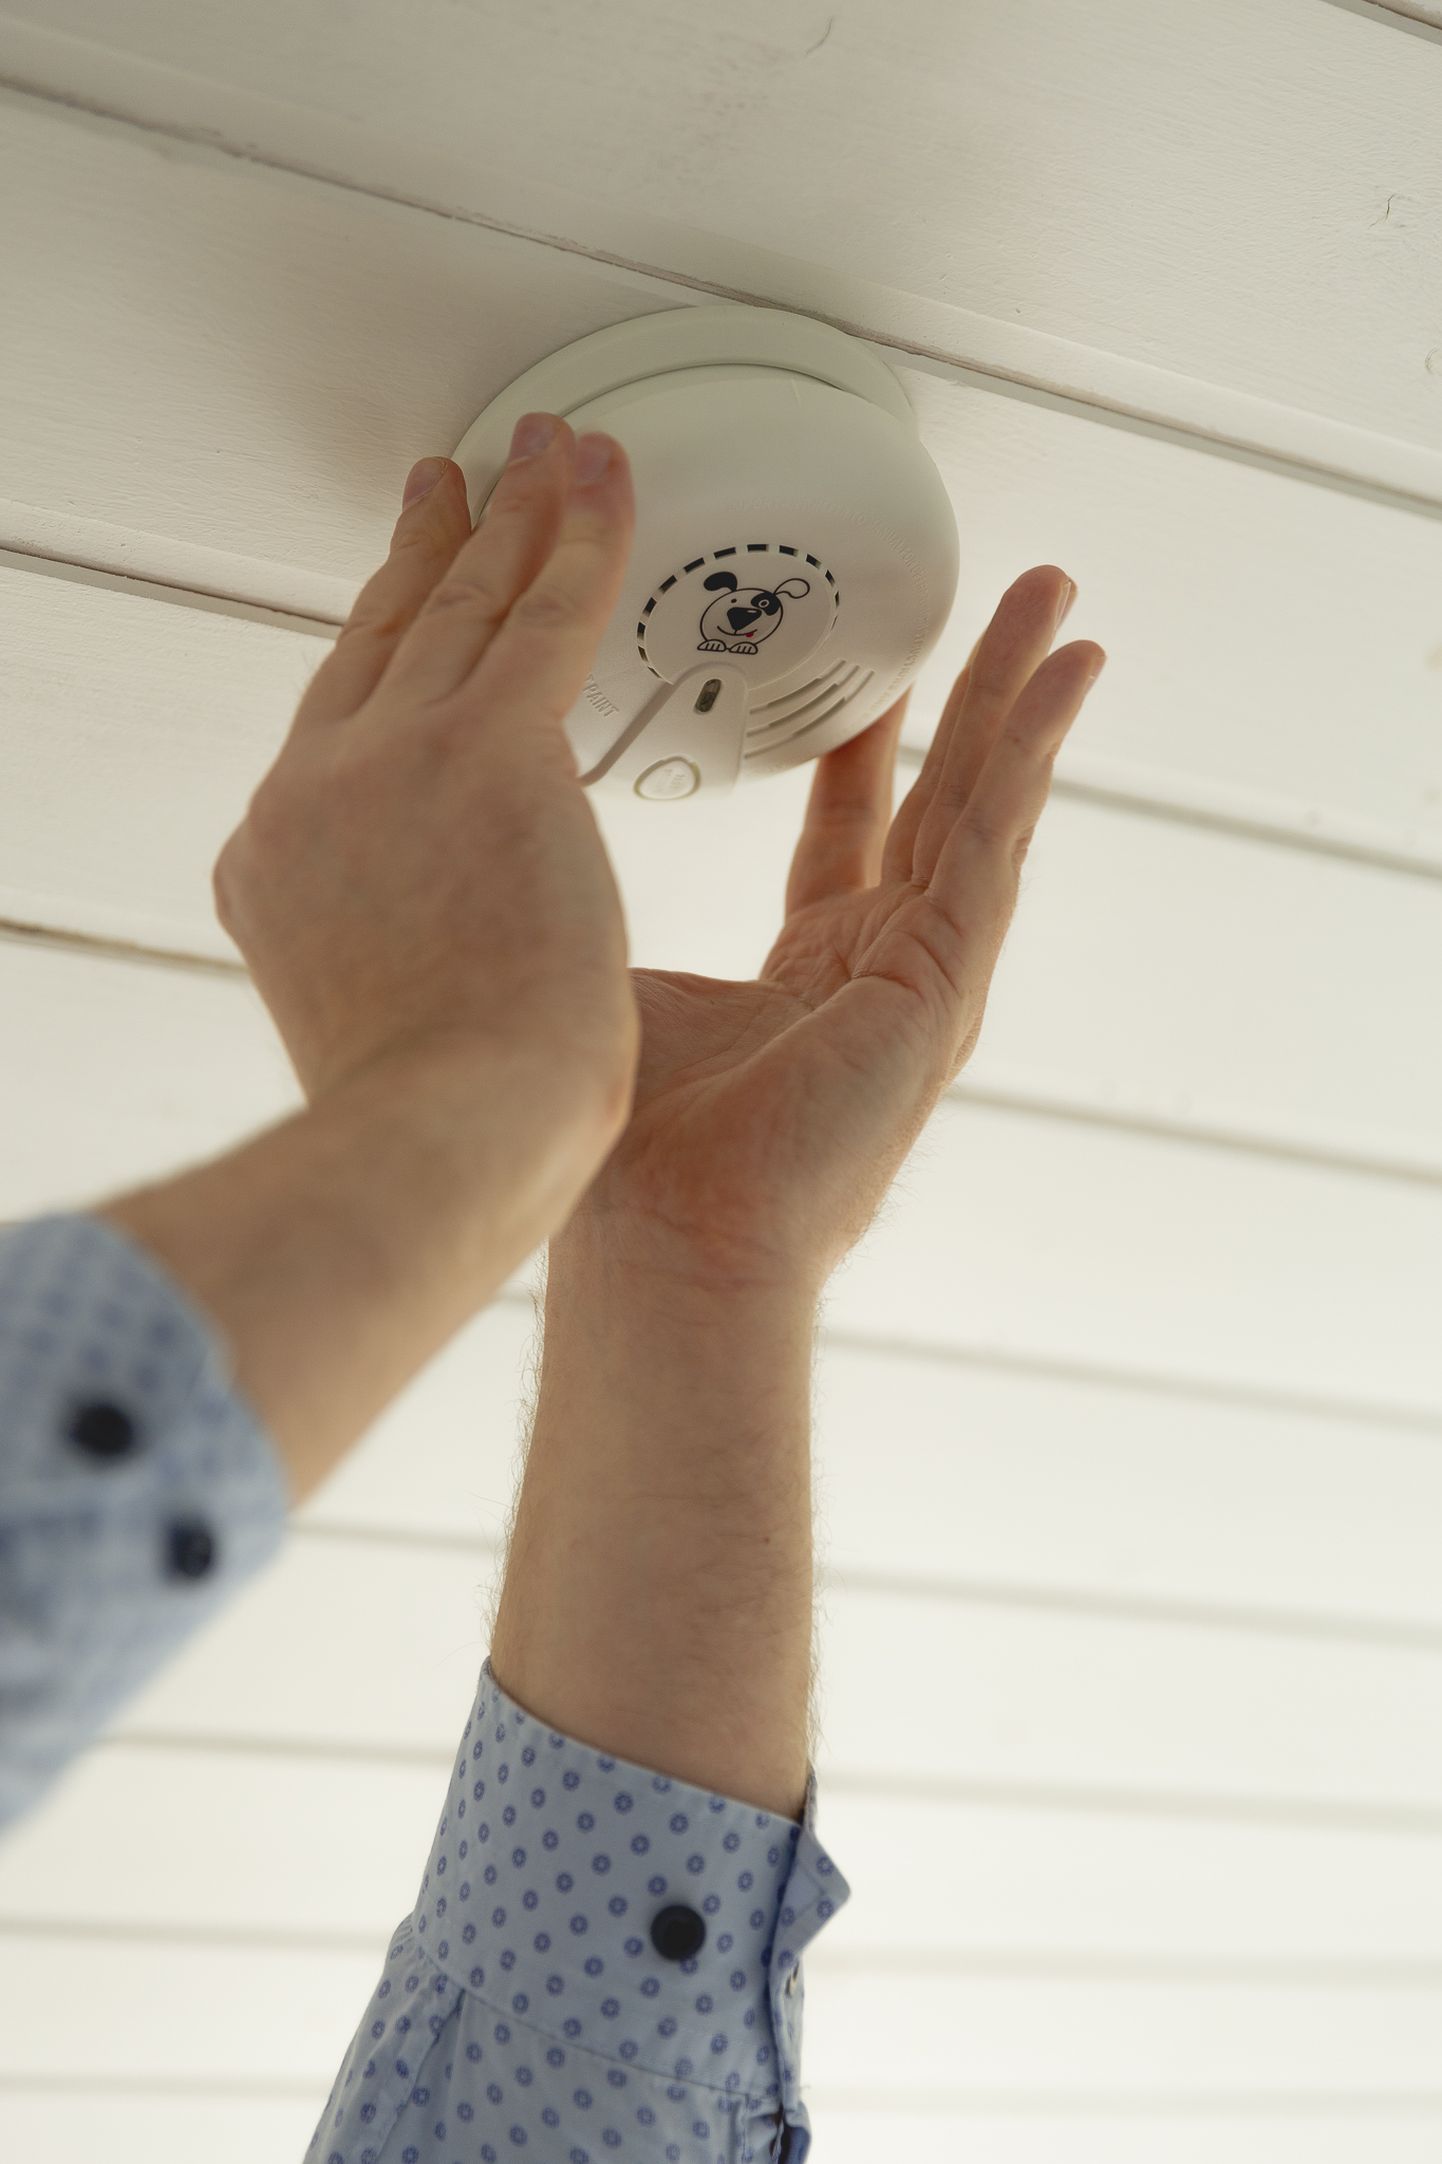 В рамках проекта «Сделаем дома безопасными» будут установлены специальные дымовые датчики для слабослышащих людей.